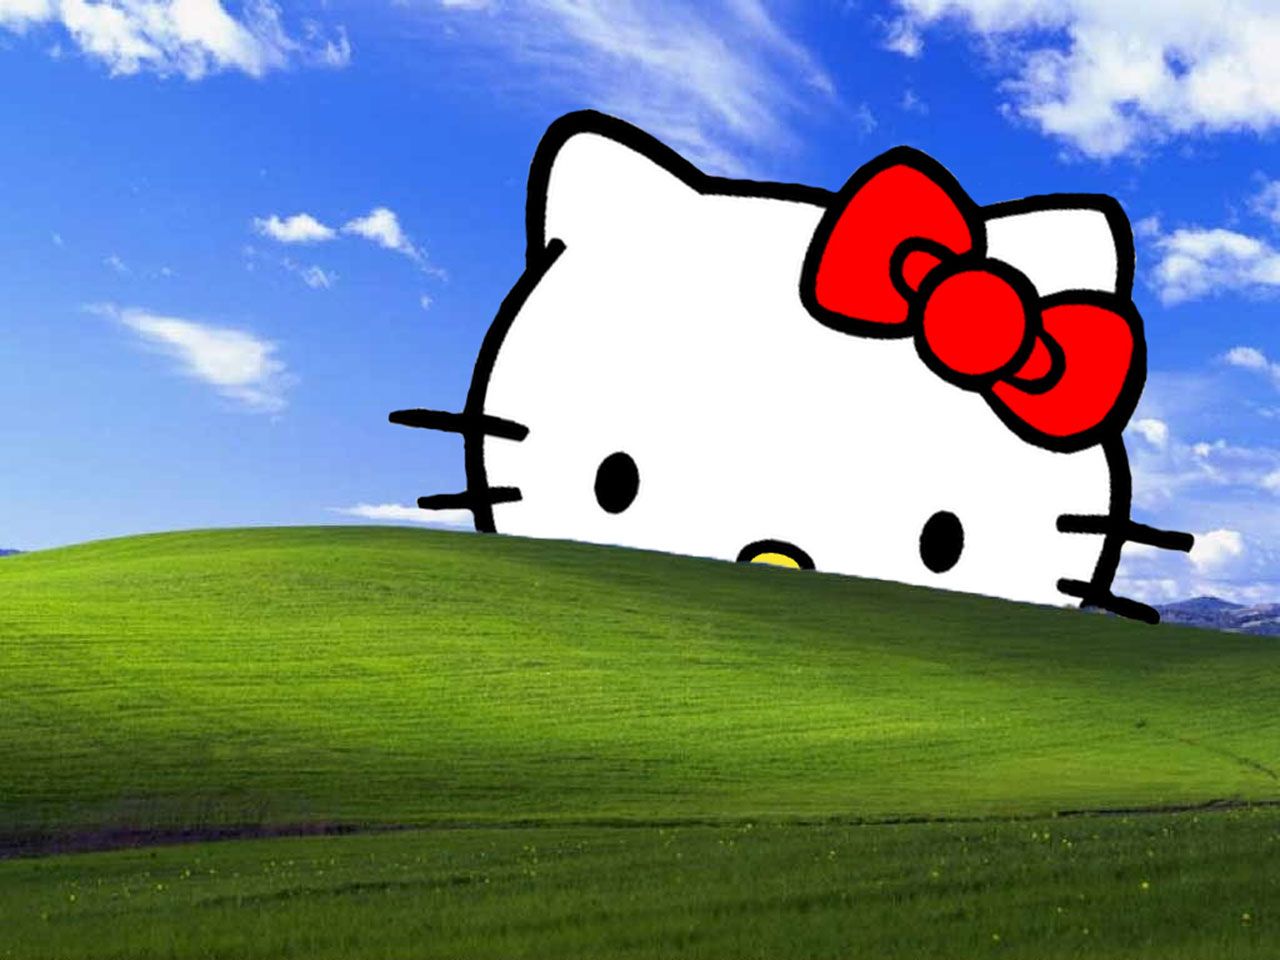 Tải xuống hình nền Hello Kitty miễn phí để tối ưu hóa màn hình của bạn. Hoàn toàn miễn phí và với rất nhiều lựa chọn đẹp và độc đáo, bạn sẽ chắc chắn tìm được một hình nền ưng ý.